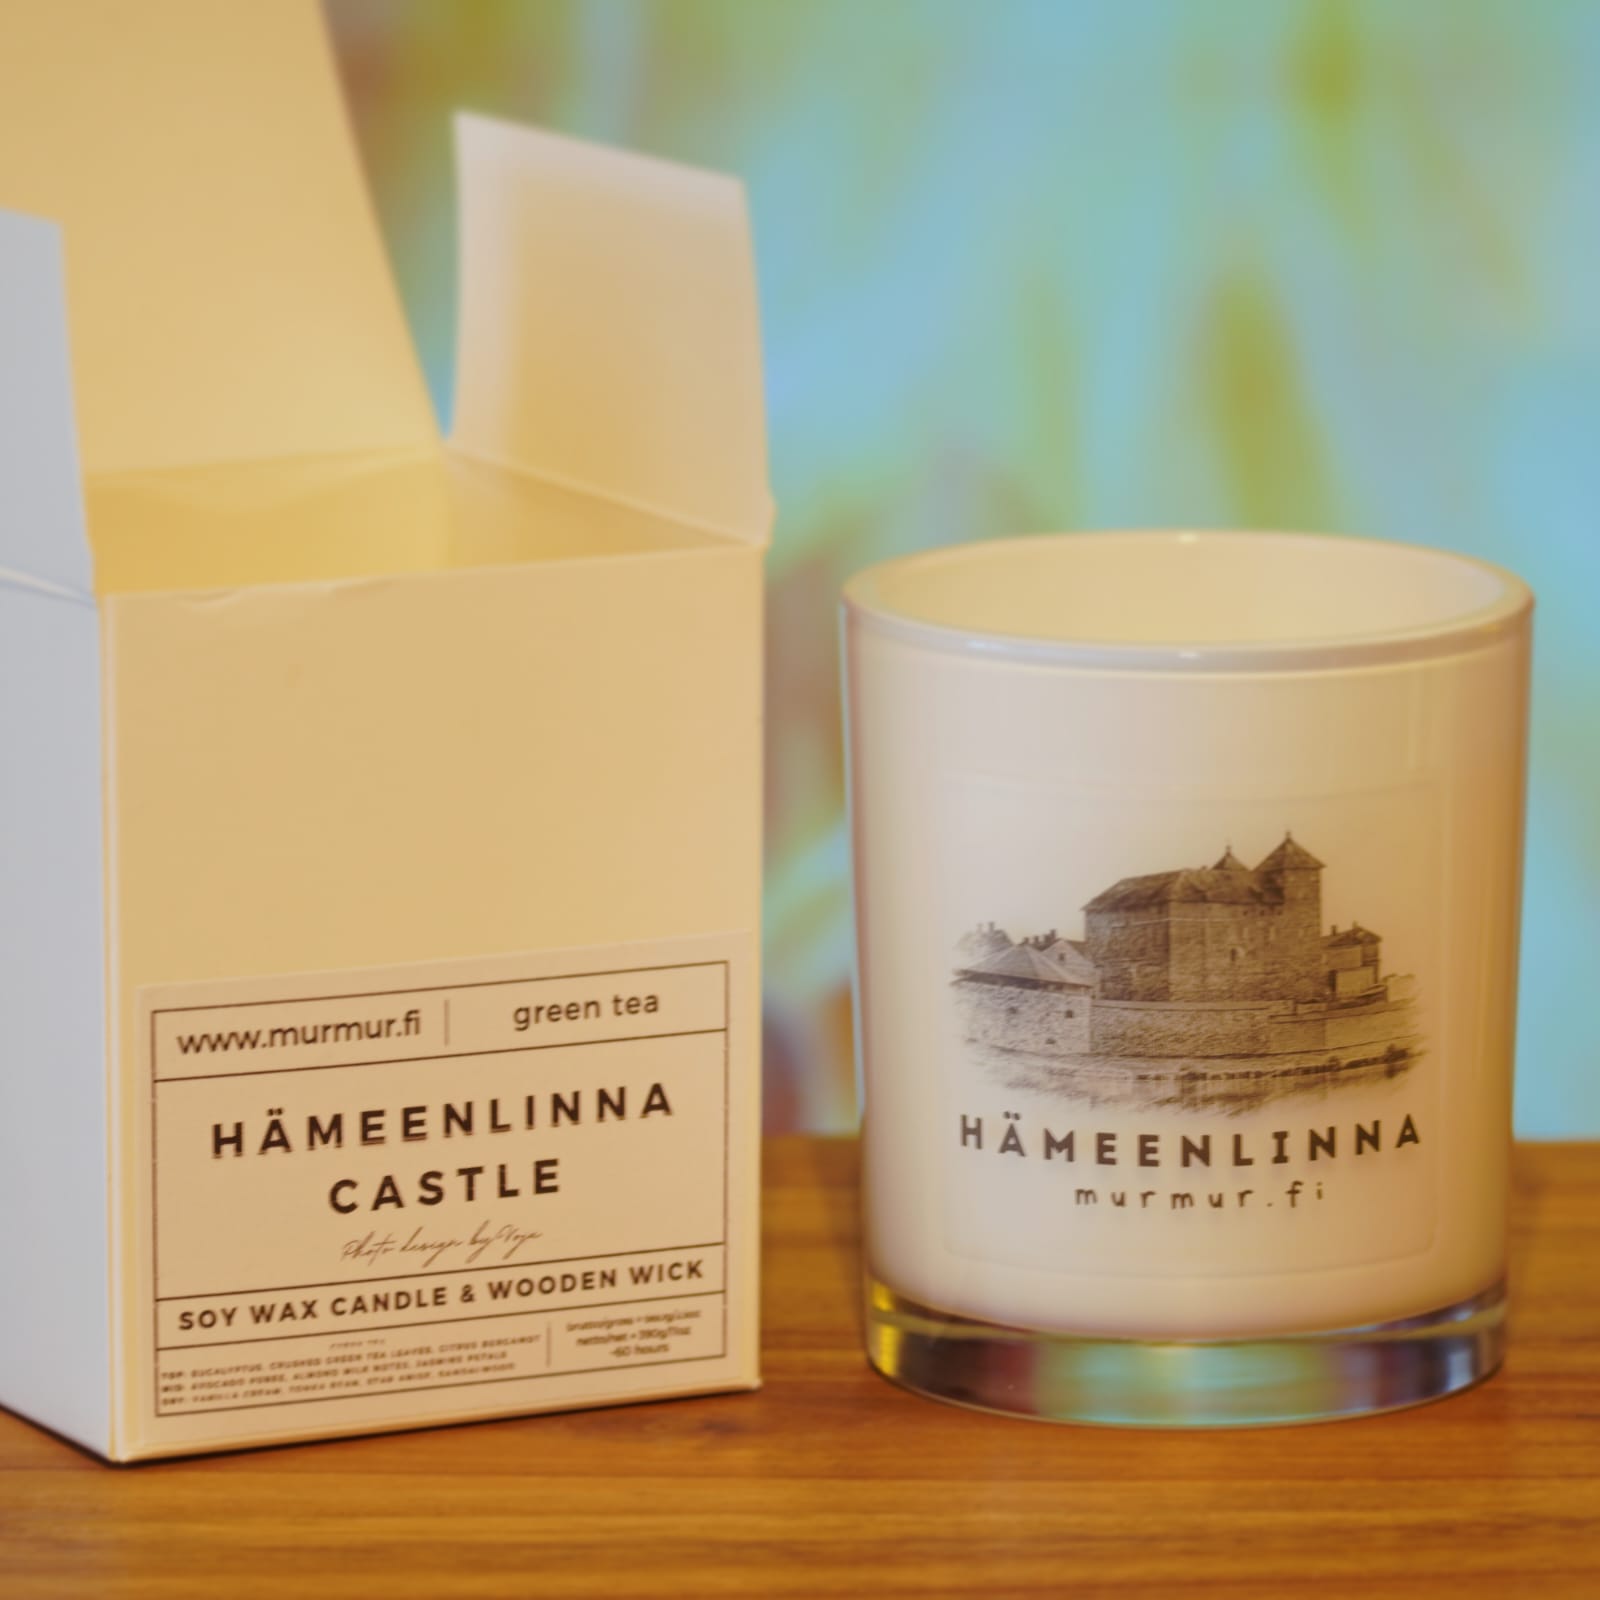 valkoinen kynttilä, Hämeenlinnan linna mustavalkoisena kuvassa ja laatikko